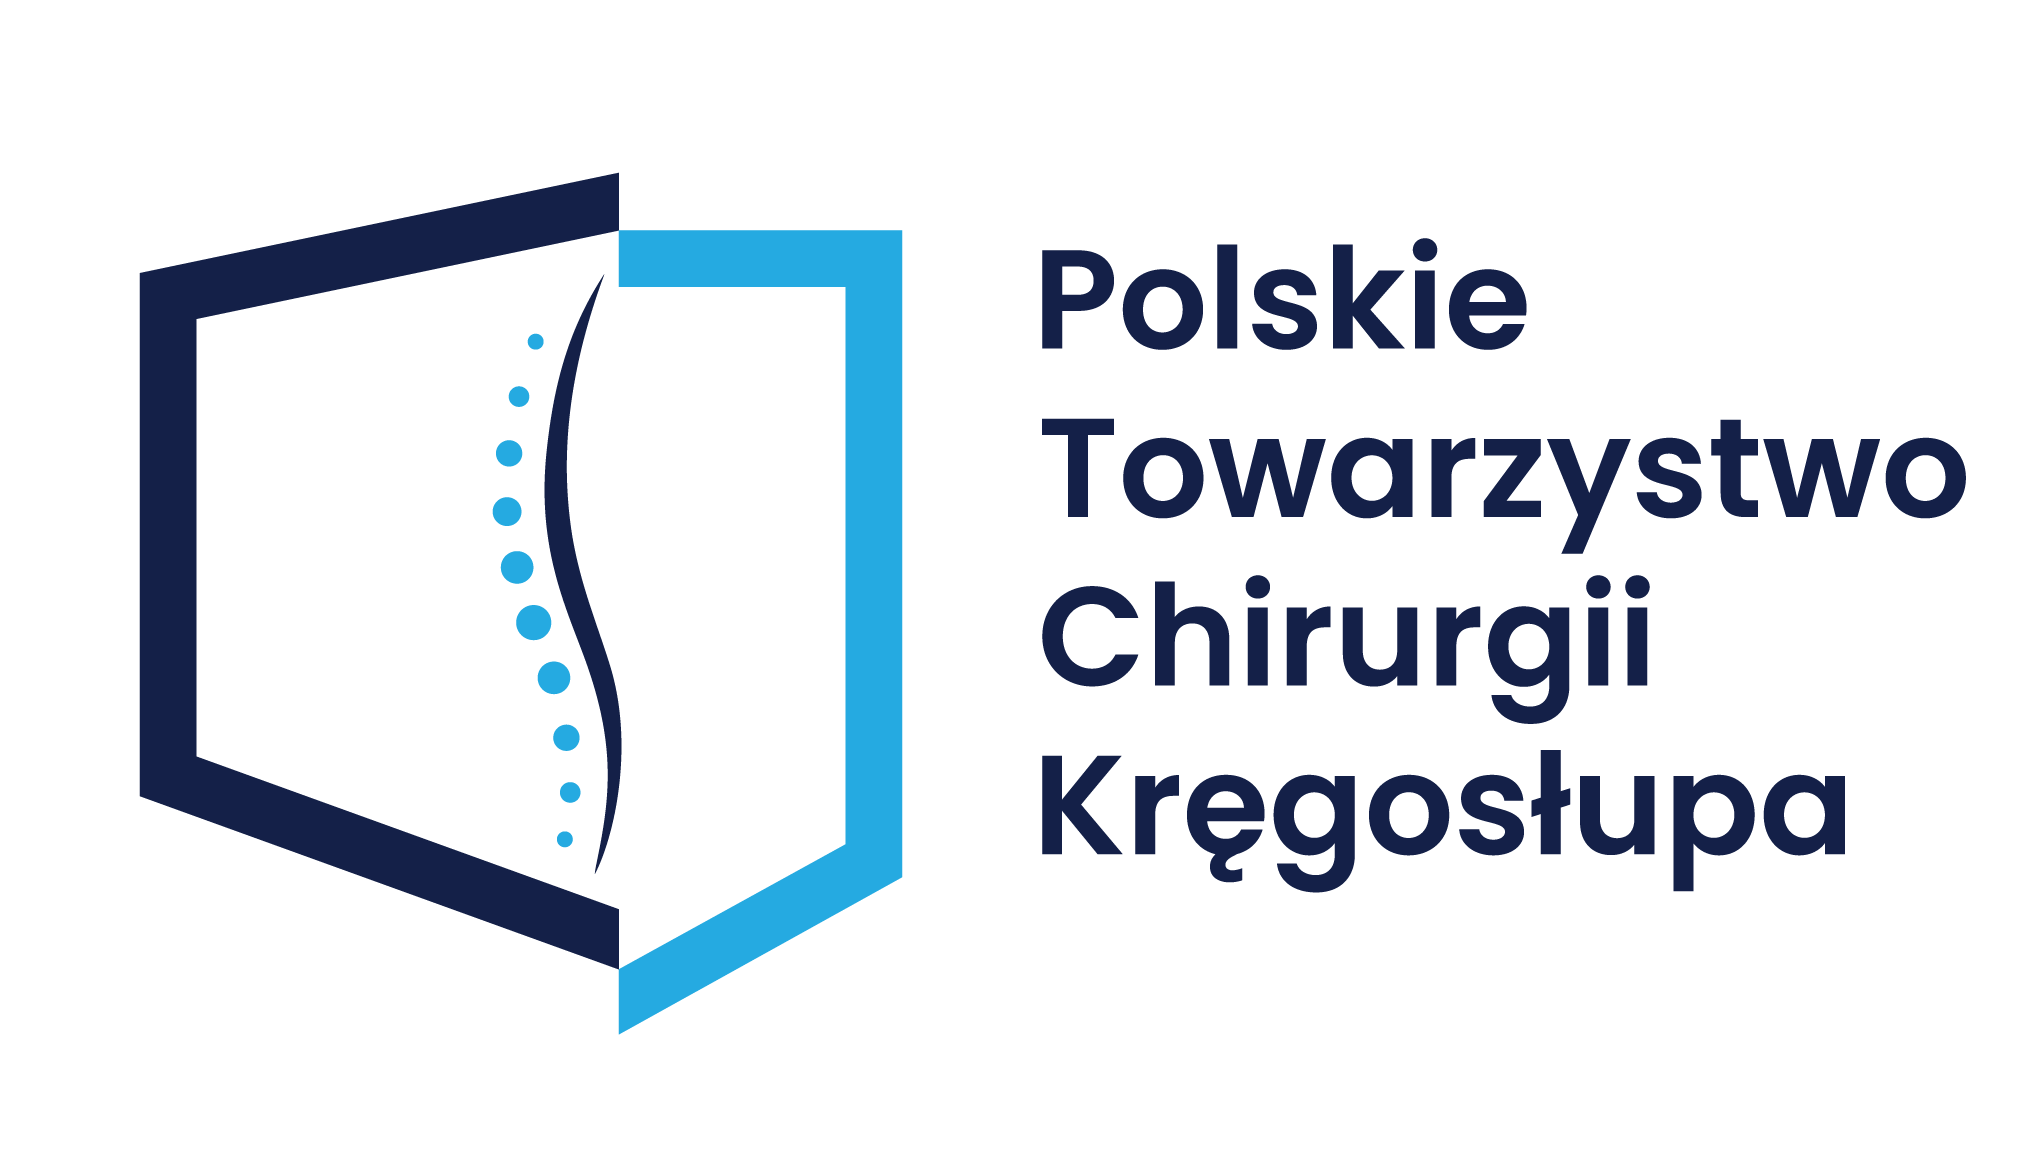 Polskie Towarzystwo Chirurgii Kręgosłupa